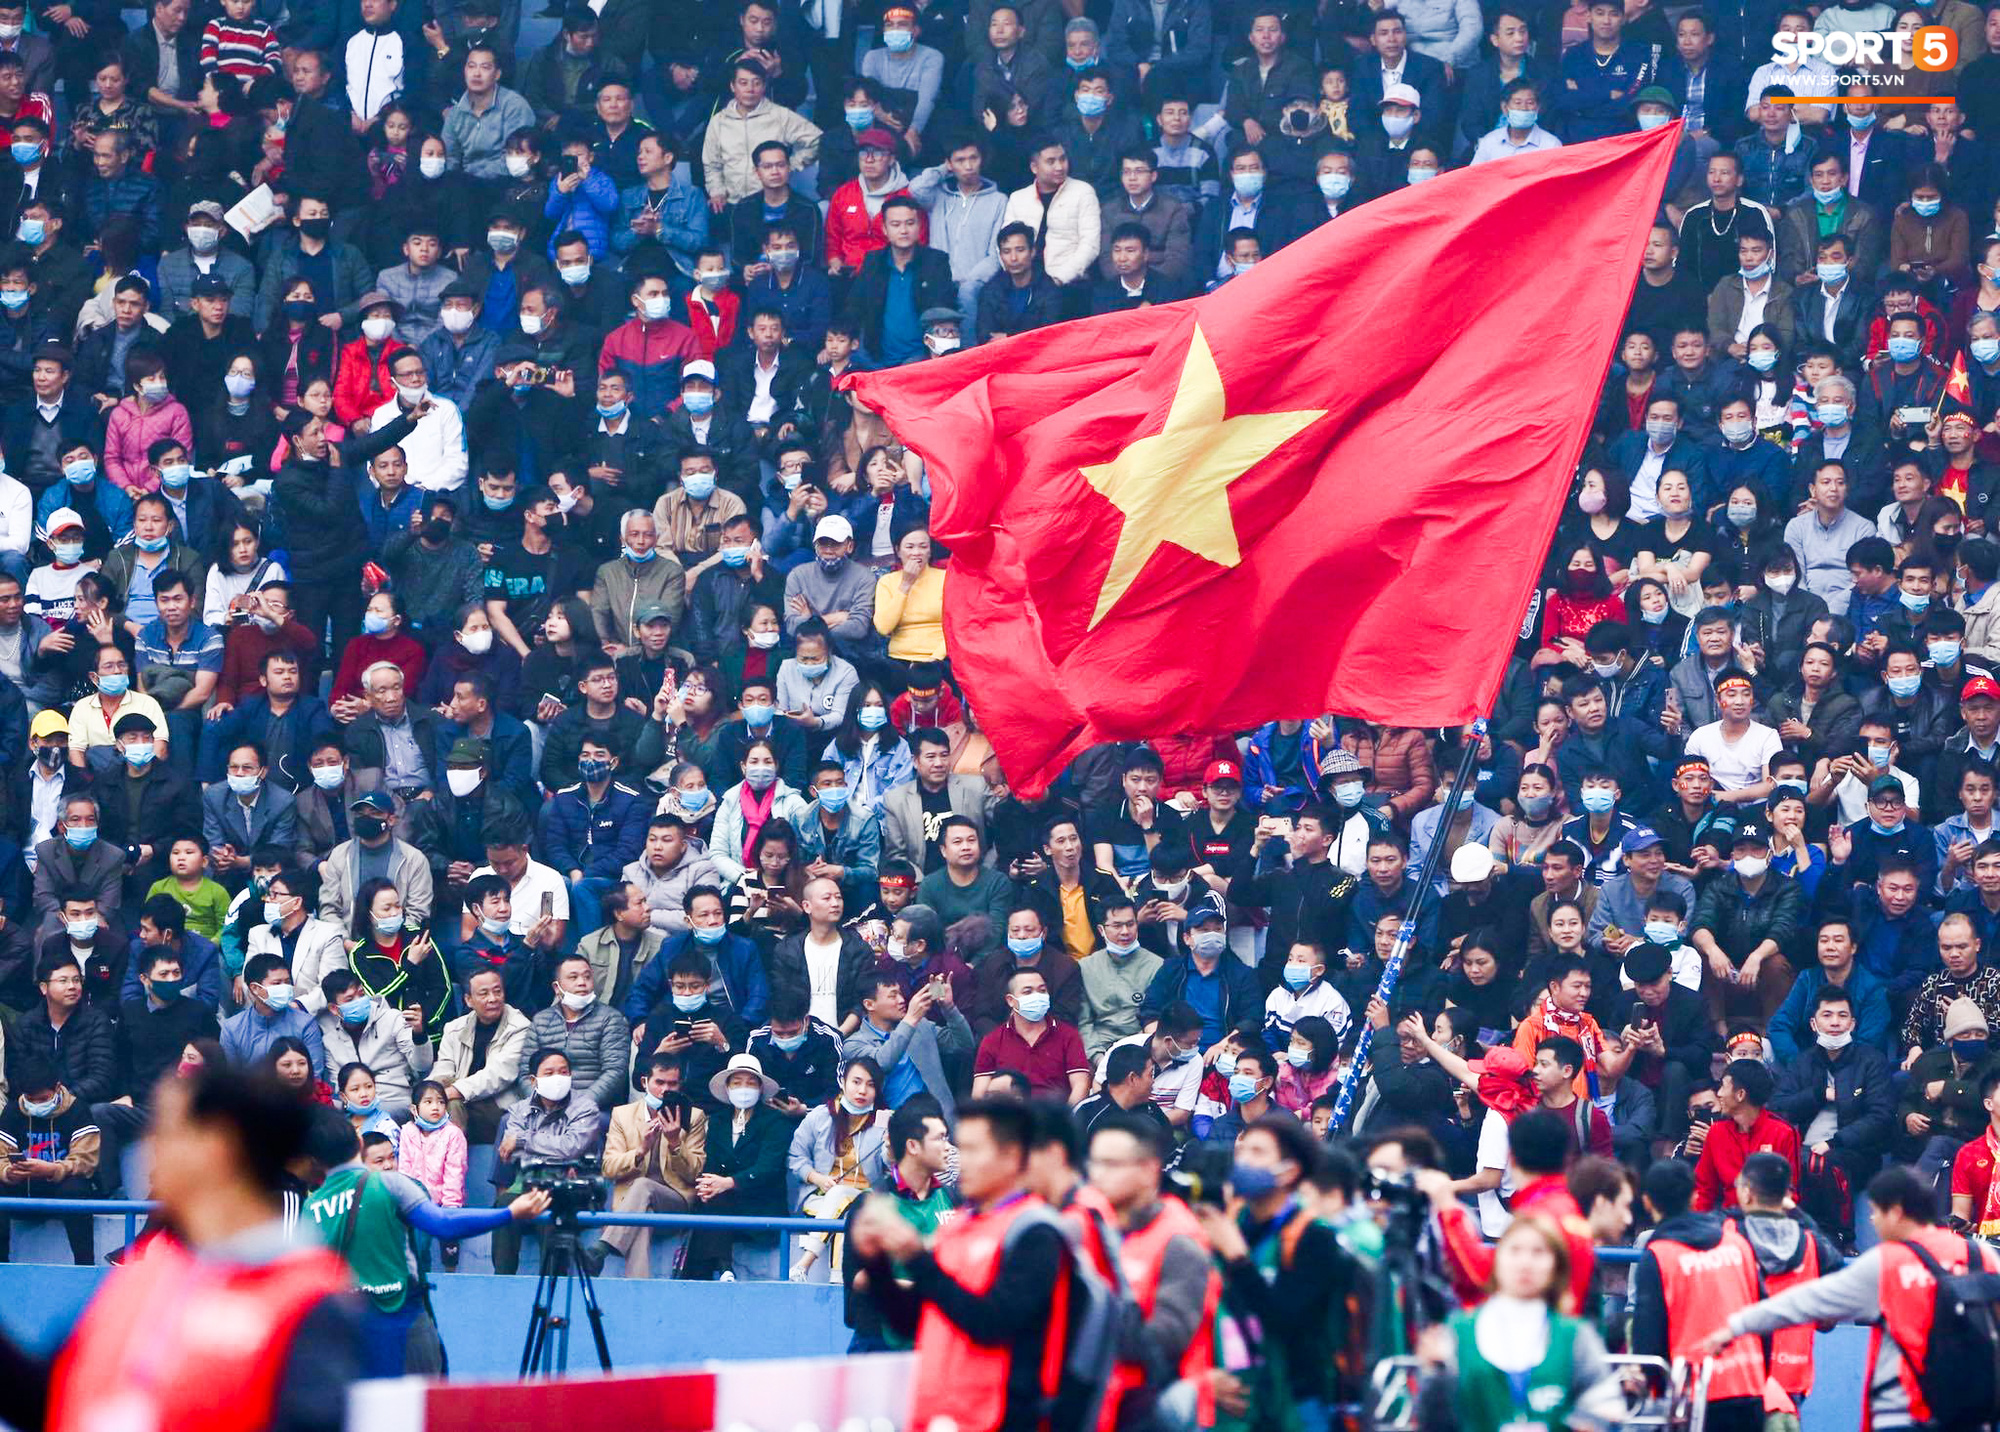 CĐV hâm mộ Tuyển Việt Nam luôn tự hào về đội tuyển của chúng ta. Cùng nhau cổ vũ và giúp đỡ từ xa với những trận đấu gần đây của các ngôi sao bóng đá Việt Nam. Cảm nhận cảm xúc đặc biệt khi xem trận đấu với những cuộc tranh đua đầy kịch tính và sự quyết tâm của các cầu thủ.